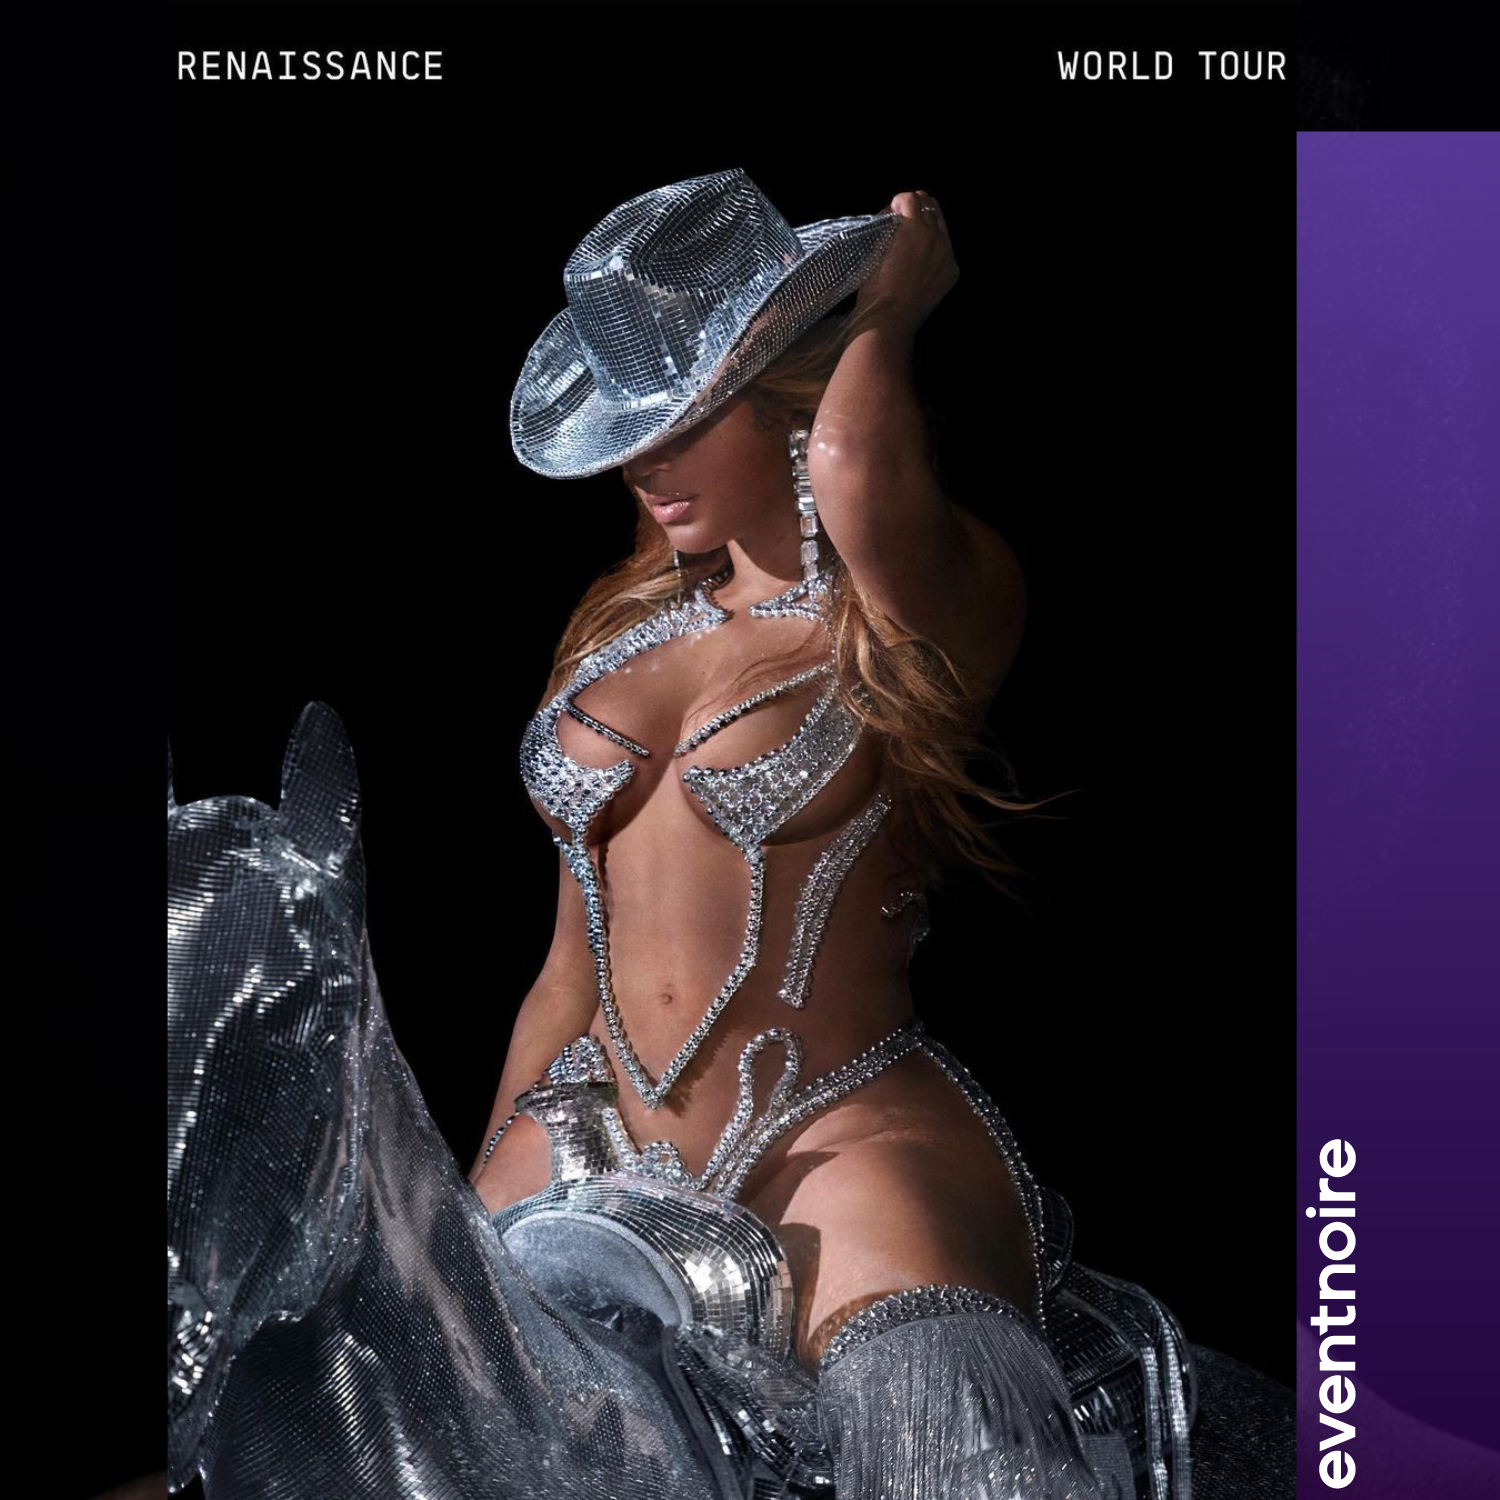 It’s Bey’s World: Presale tickets for Beyoncé’s Renaissance World Tour Go Live